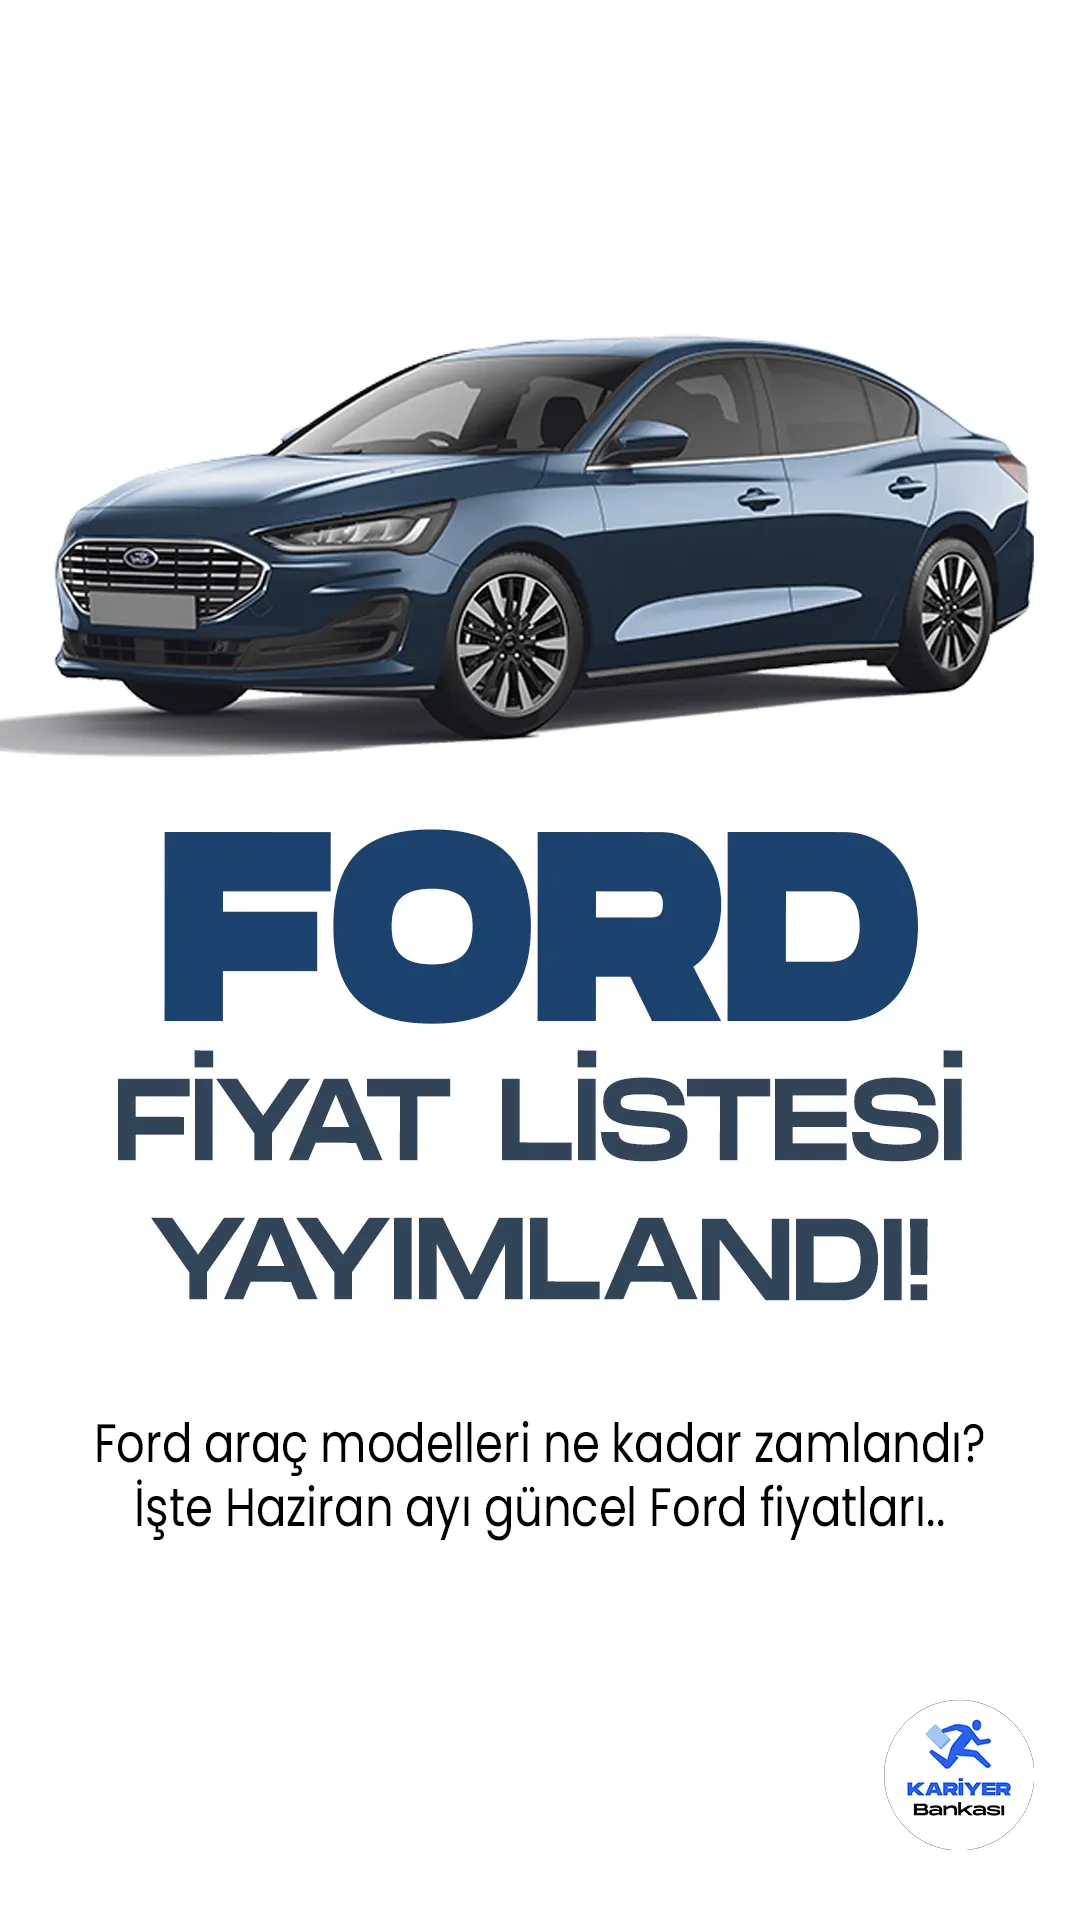 Ford Haziran 2023 Fiyat Listesi Yayımlandı! Türkiye'de popüler araç modellerinden biri olan Ford, her ay fiyat listelerini güncellemeye devam ediyor.Ford, kompakt otomobil segmentindeki beğenilen modelleriyle dikkat çekmeye devam ediyor.